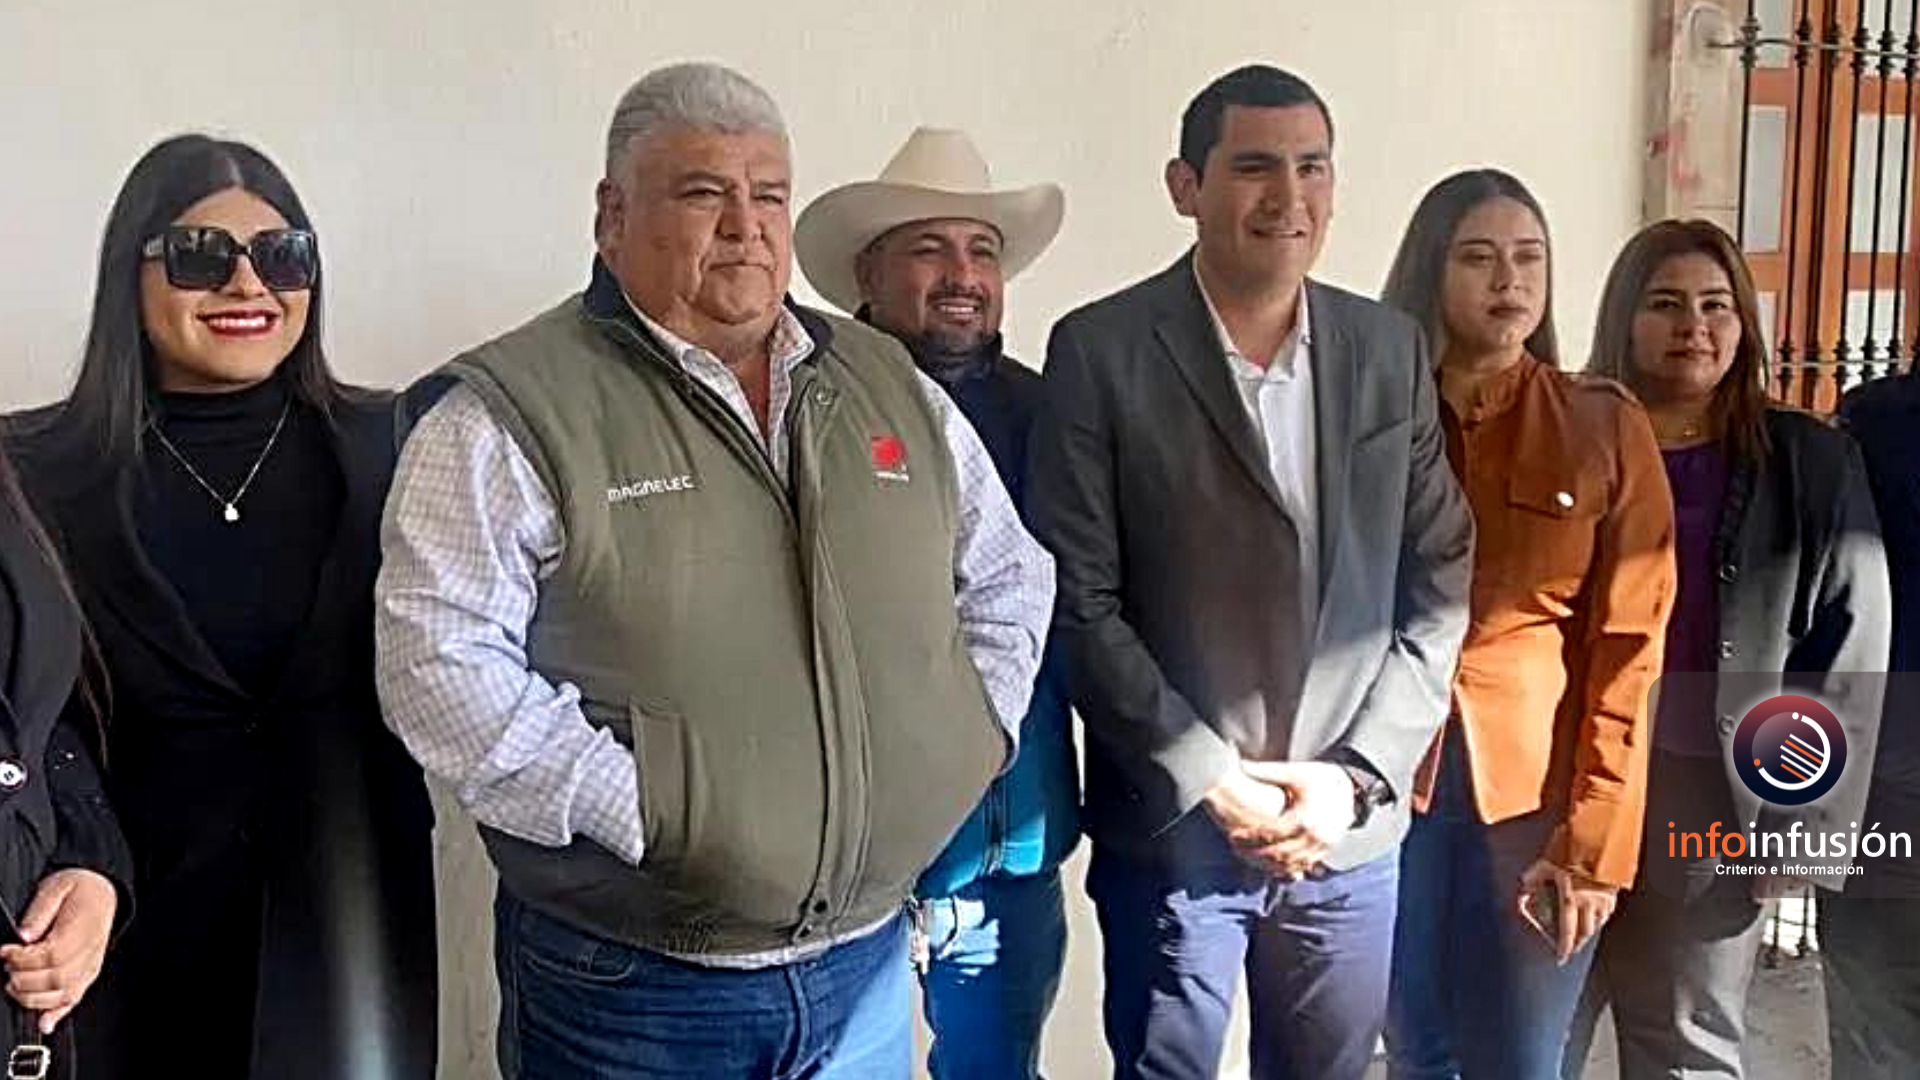 Regidores de distintos partidos señalan irregularidades en la gestión de la alcaldesa de Tlahualilo